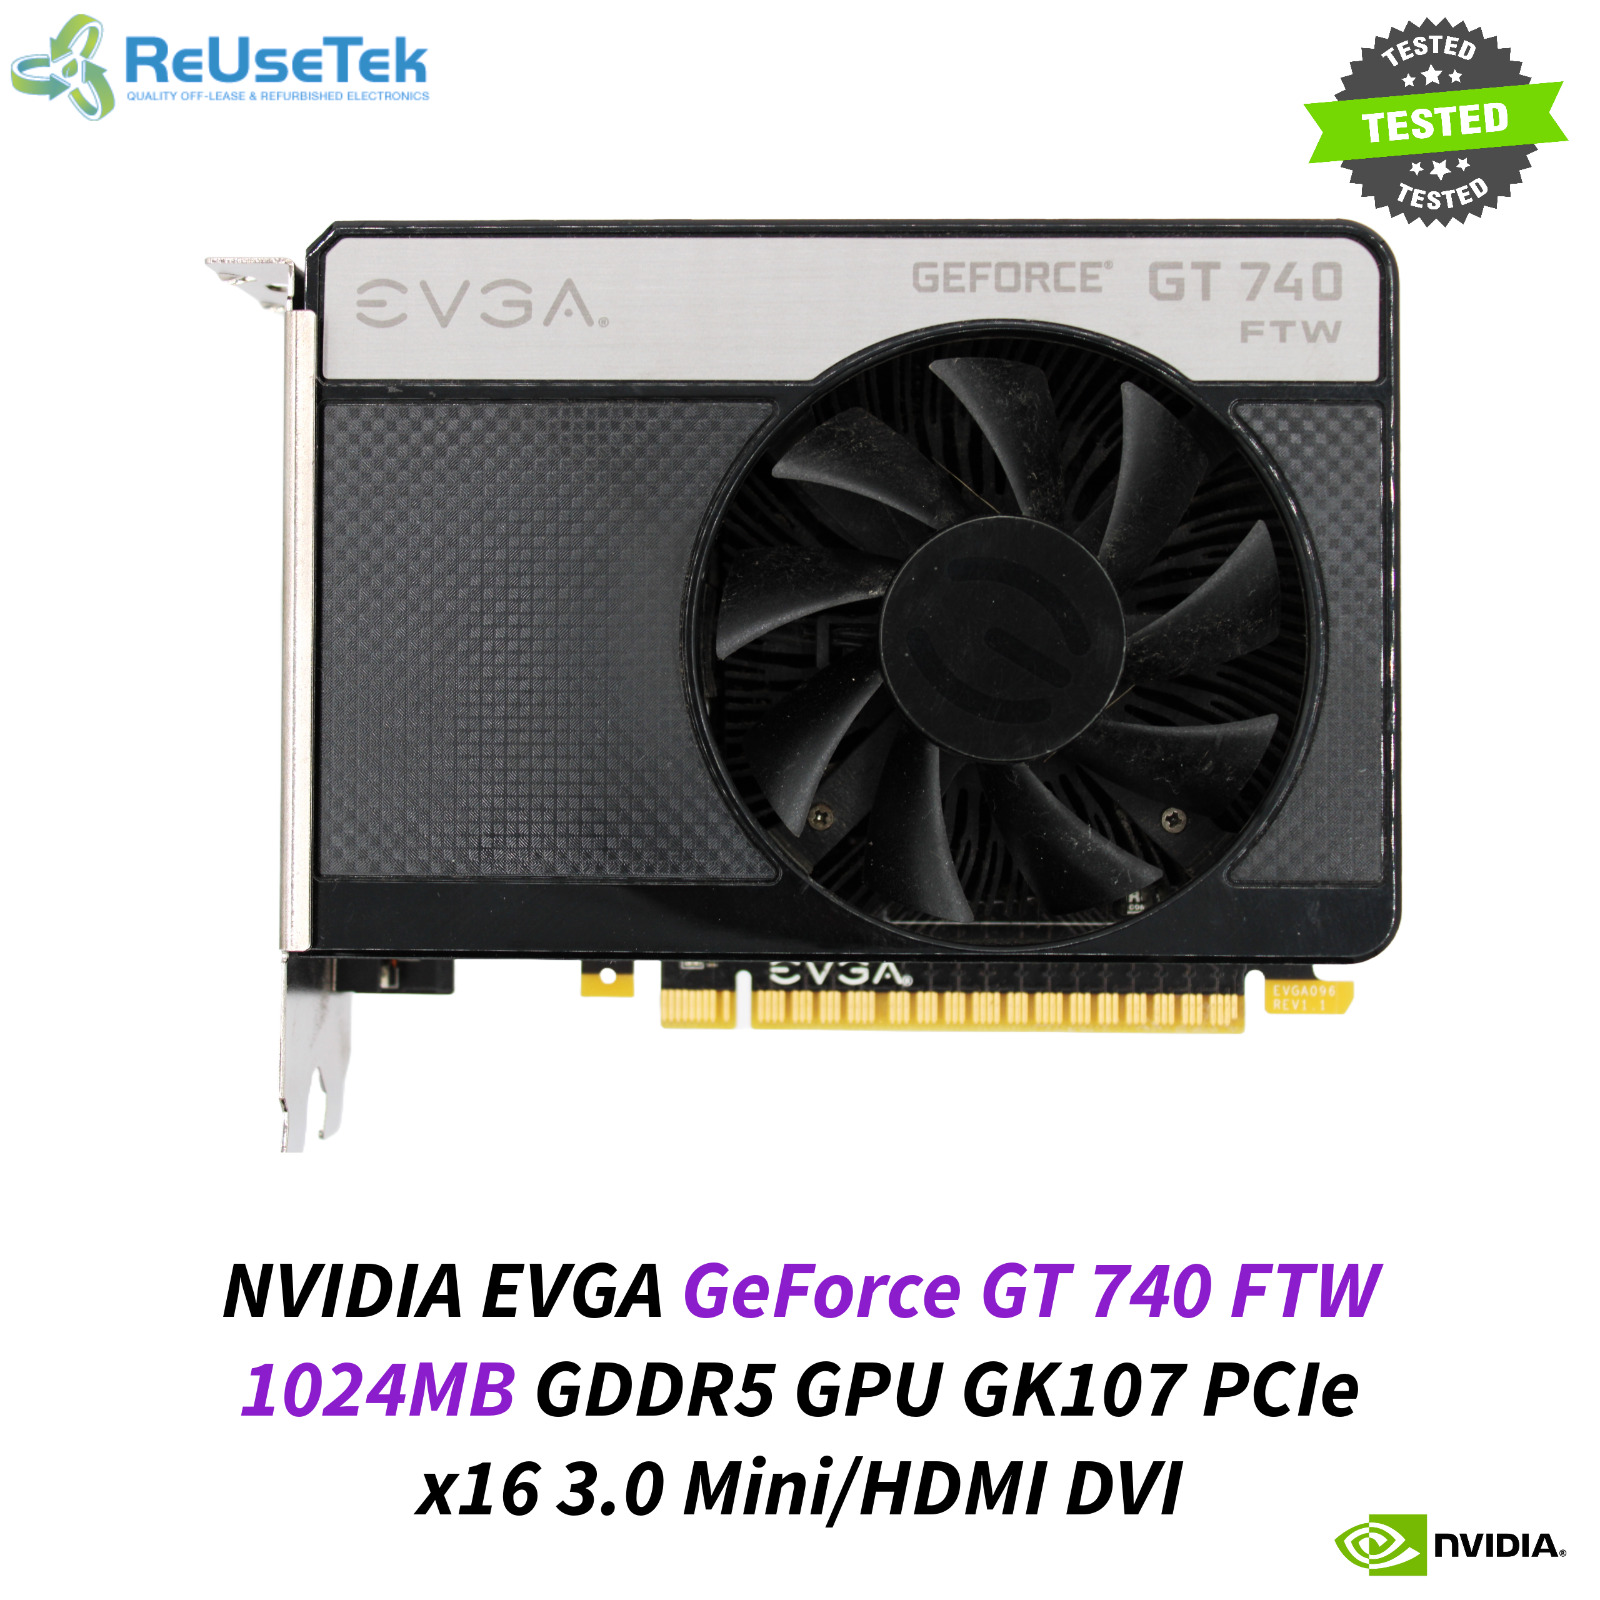 NVIDIA EVGA GeForce GT 740 FTW 1024MB GDDR5 GPU GK107 PCIe x16 3.0 Mini/HDMI DVI